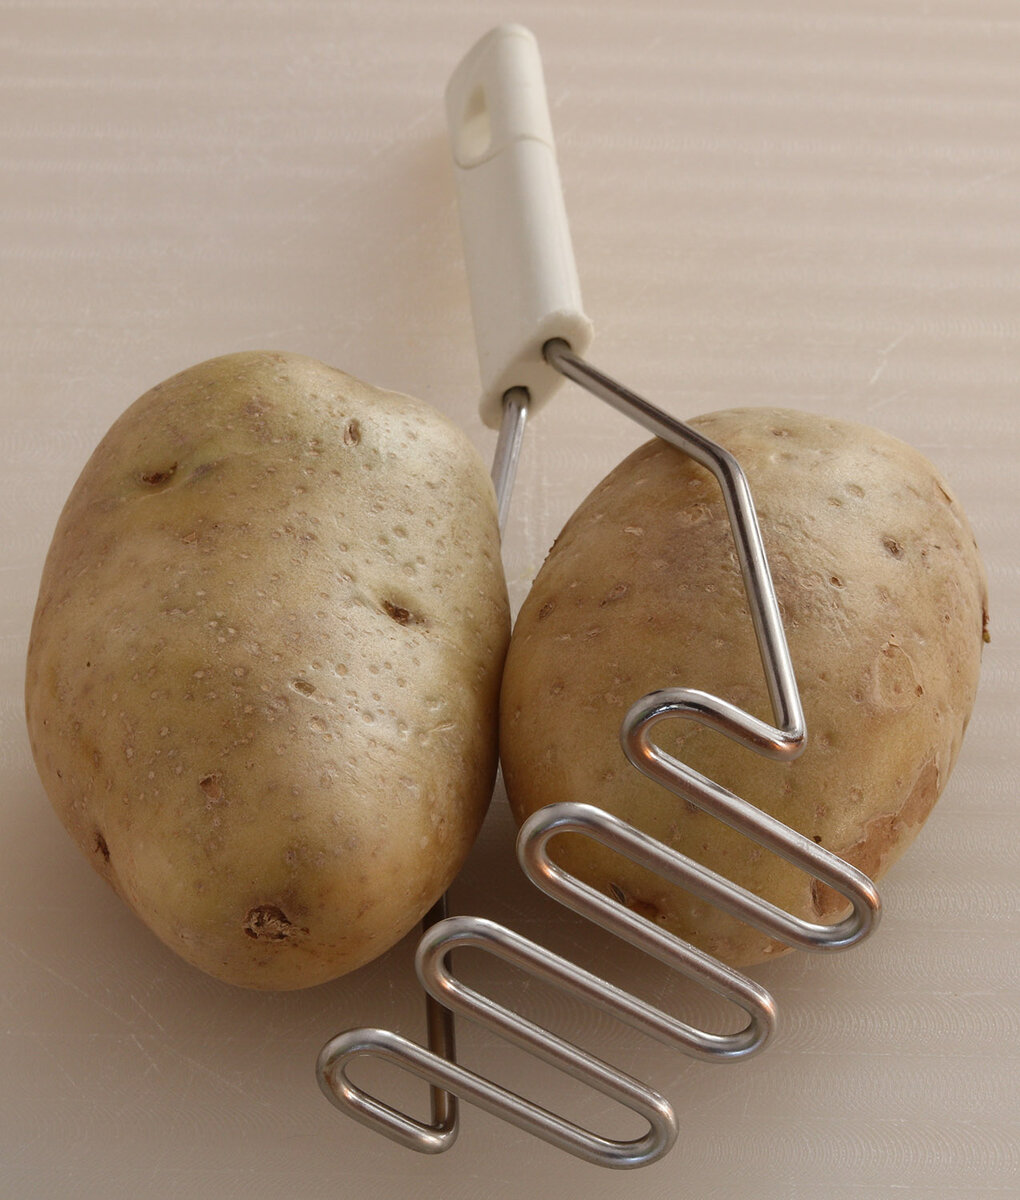 Potato masher s.jpg